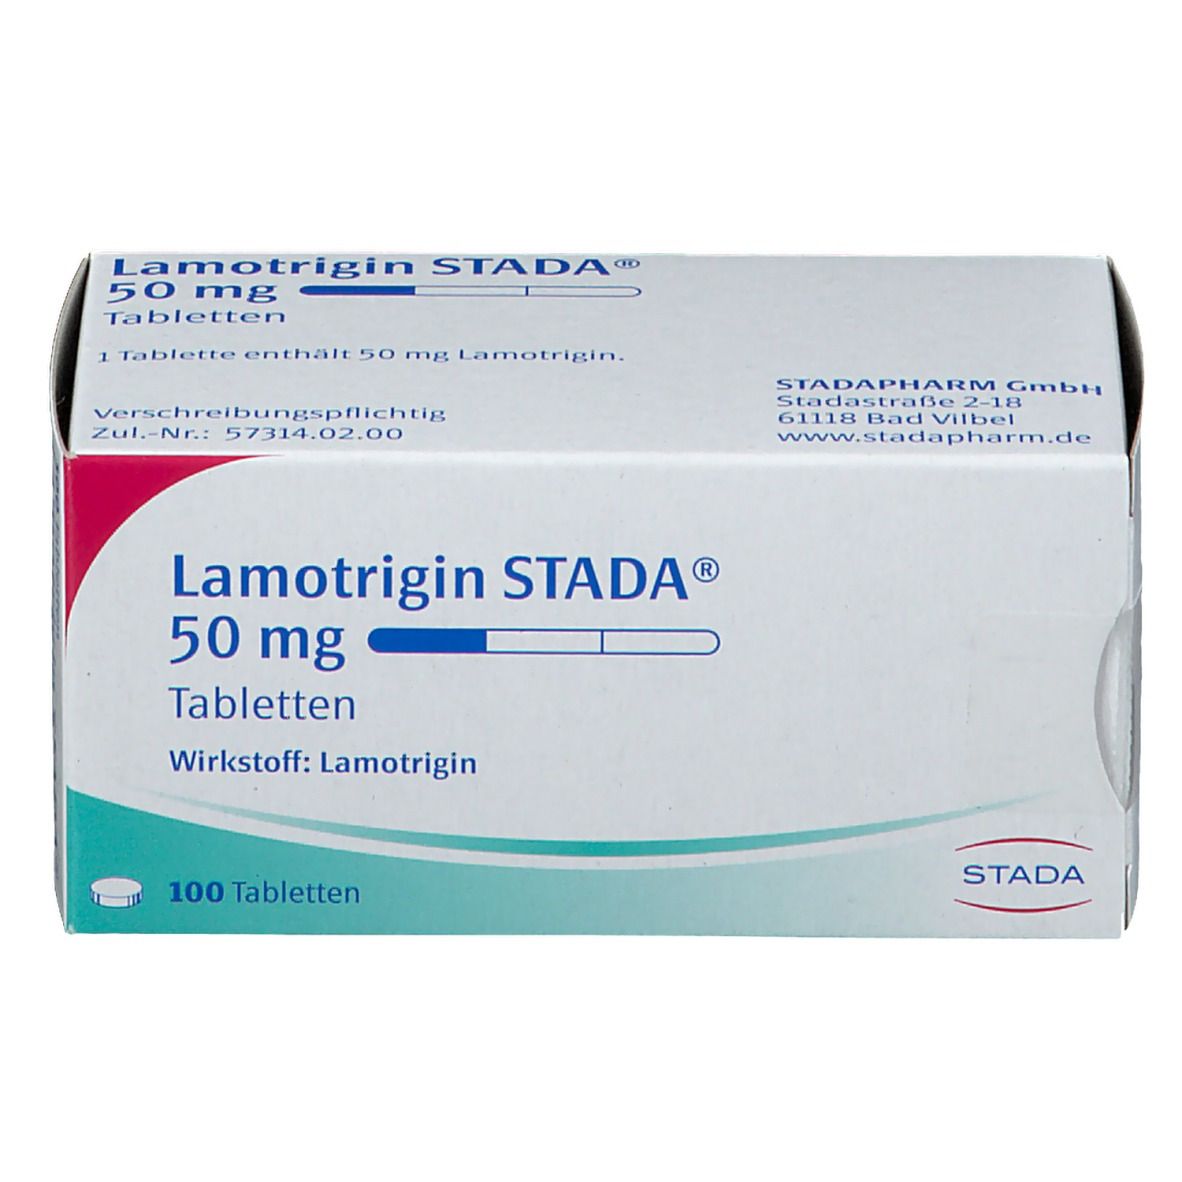 Lamotrigin STADA® 50 mg